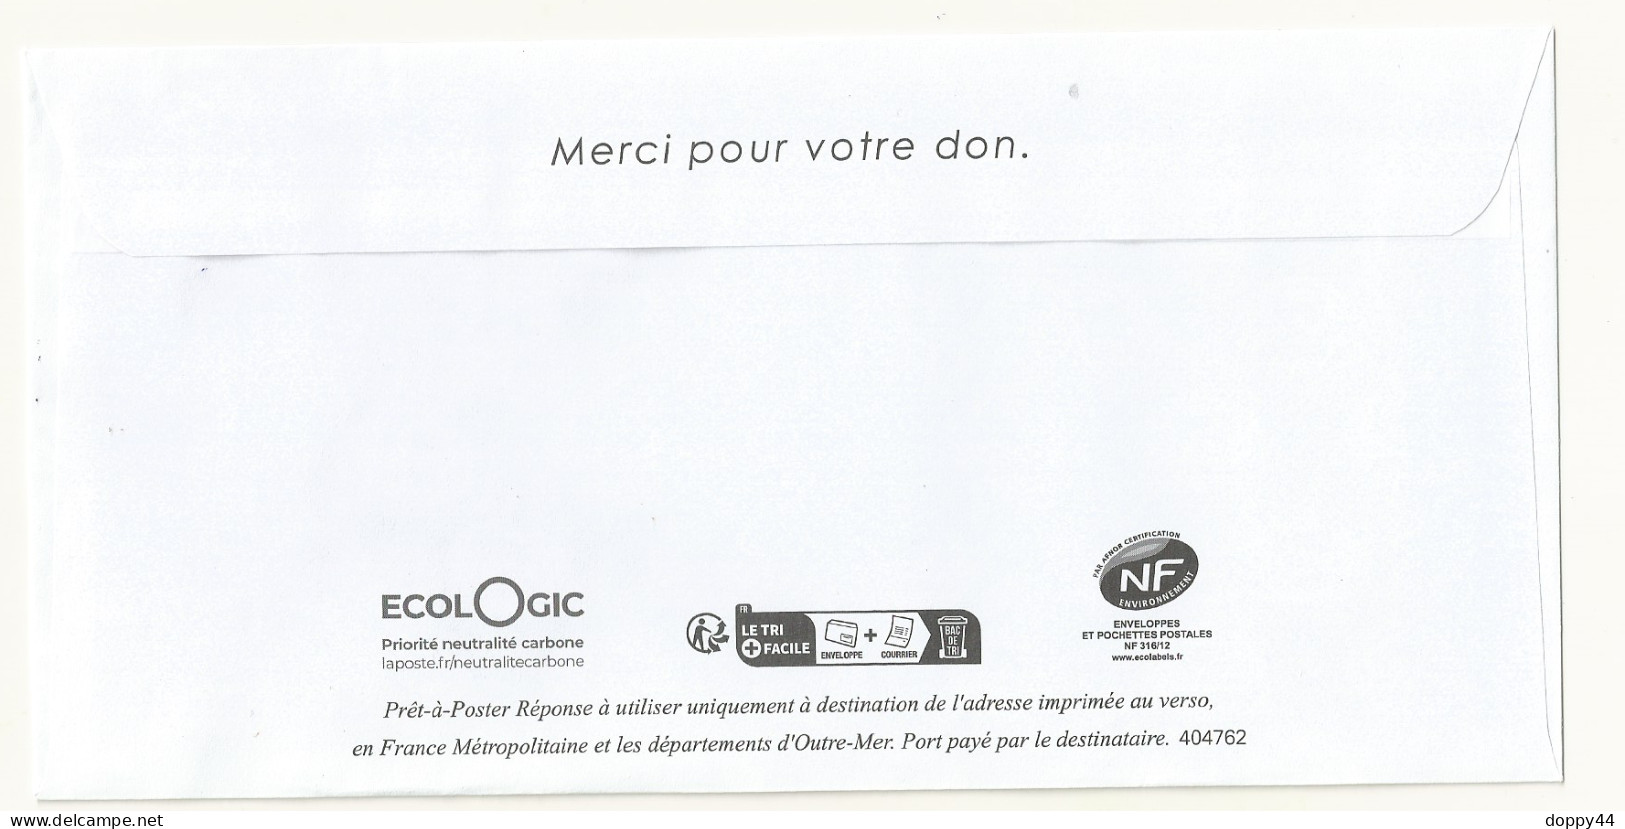 PAP POSTREPONSE ECO ORDRE DE MALTE FRANCE. LOT 404762 - Prêts-à-poster:Answer/Marianne L'Engagée